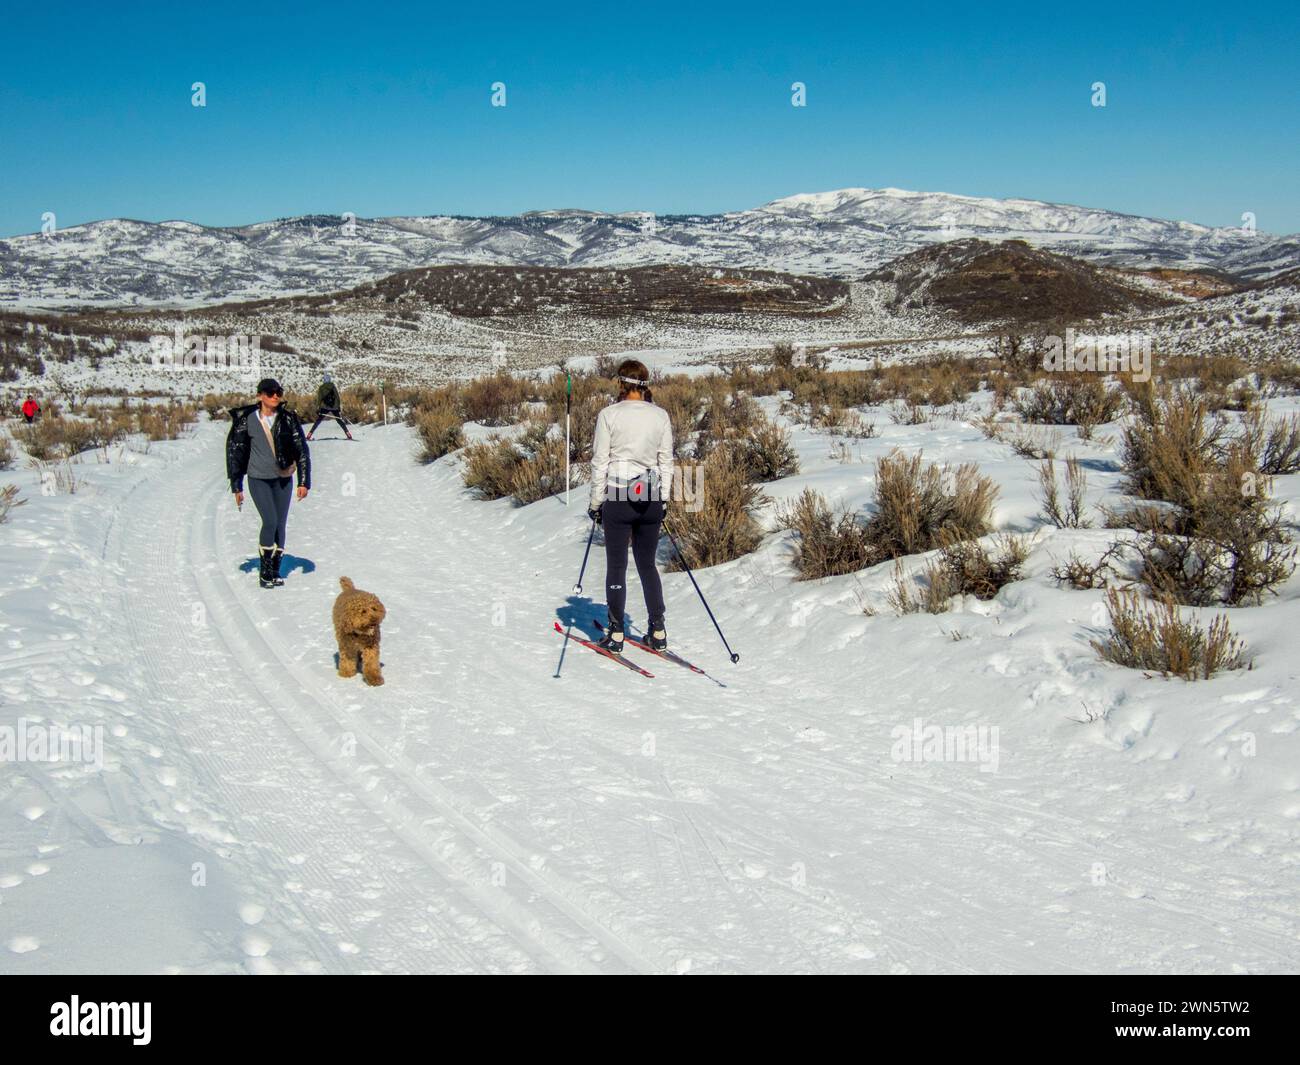 Ambientazione invernale con gli sciatori di fondo e i loro cani nell'alto deserto con pennello e neve a Round Valley vicino a Park City, Utah, Stati Uniti. Foto Stock